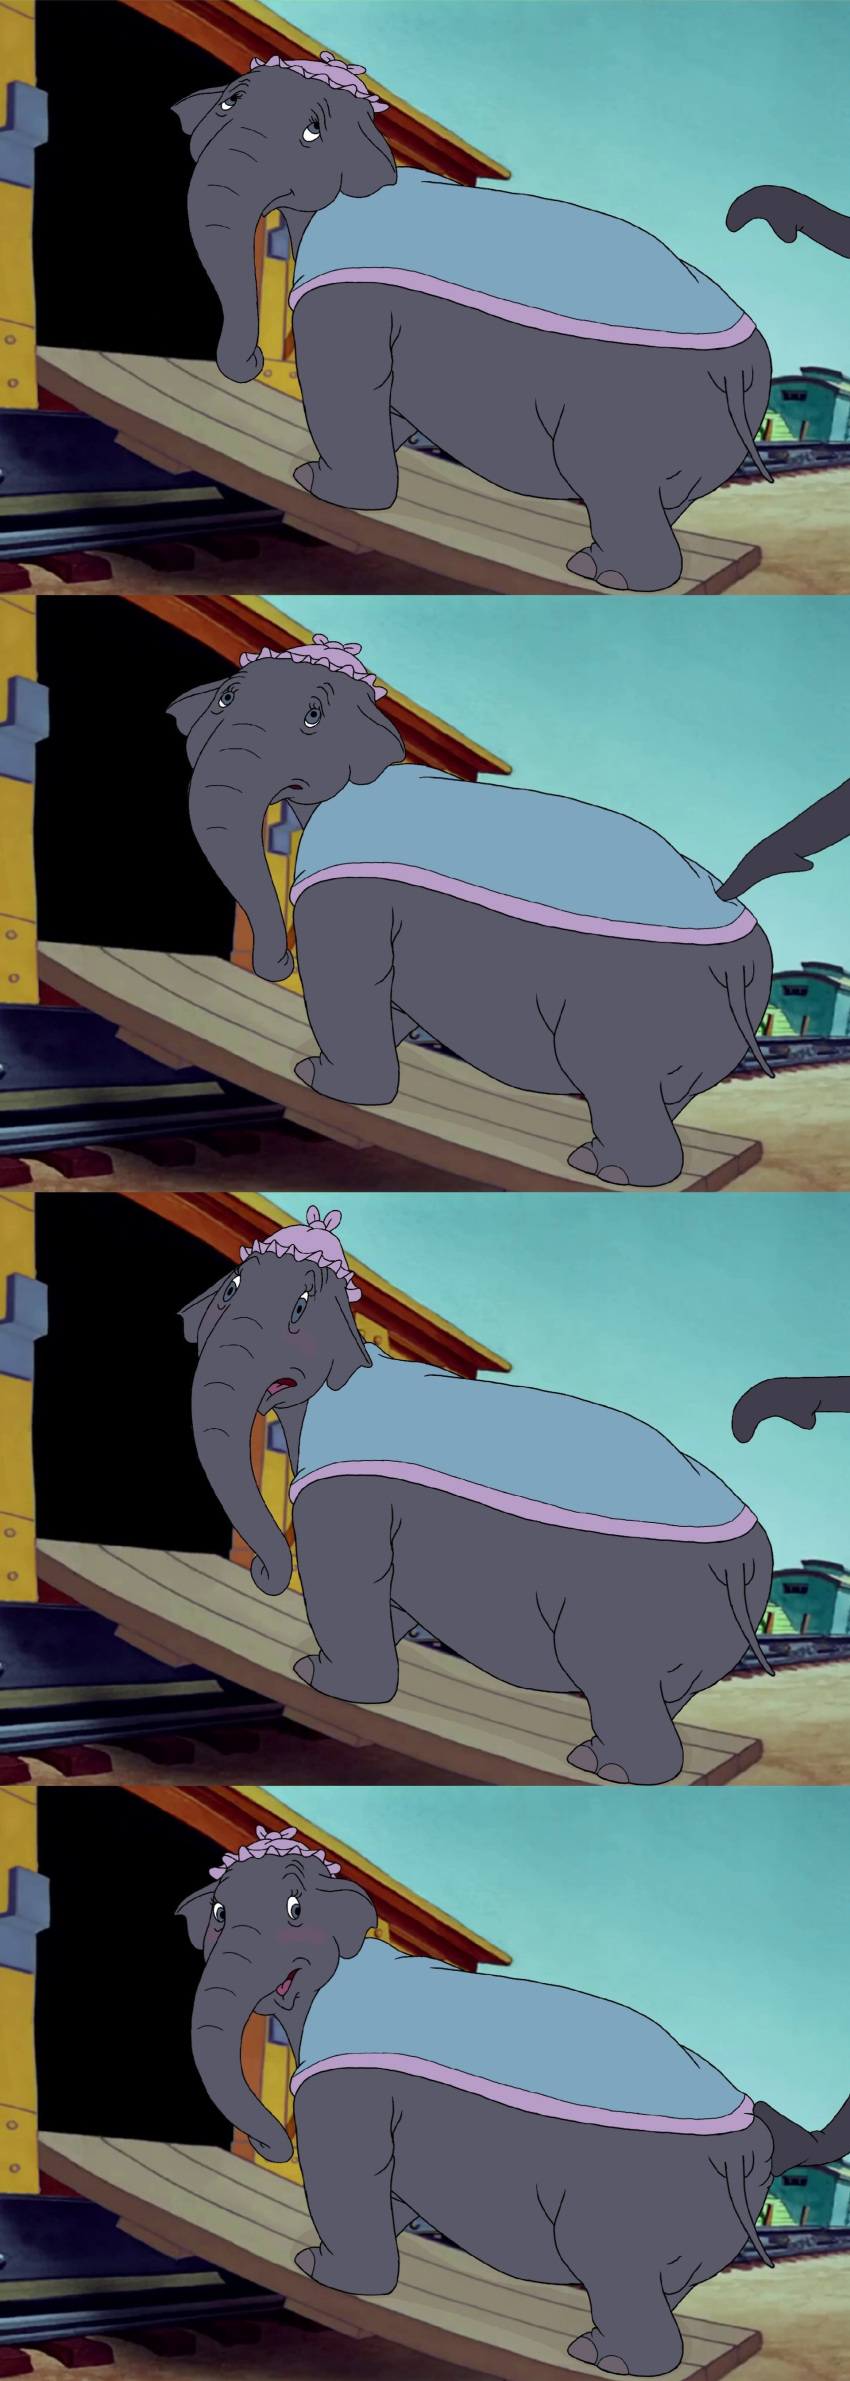 big_ass dumbo dumbo_(fan_character) elephant mr._jumbo mrjumbo mrs._jumbo_(dumbo) mrsjumbo mrsjumbo_(dumbo) pachyderm plump plump_ass poking